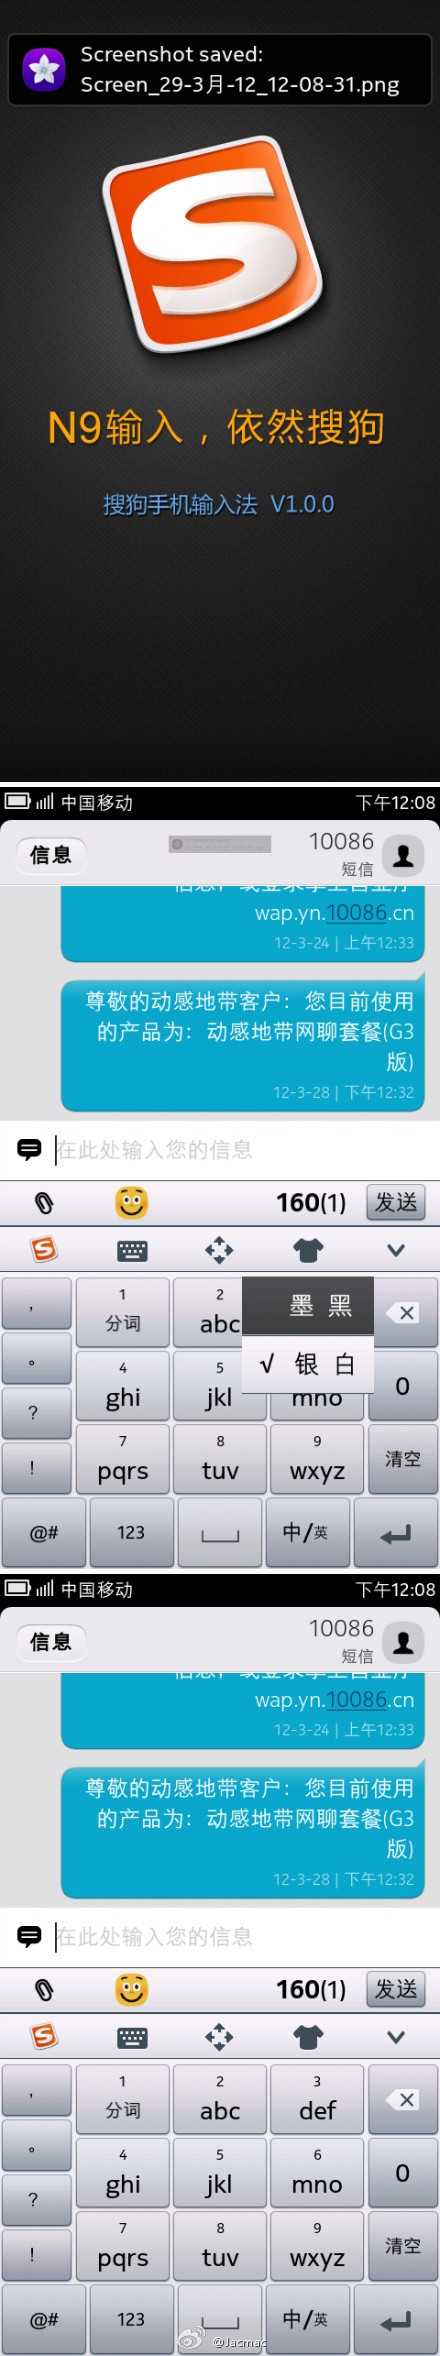 搜狗手机输入法MeeGo平台1.0版正式发布